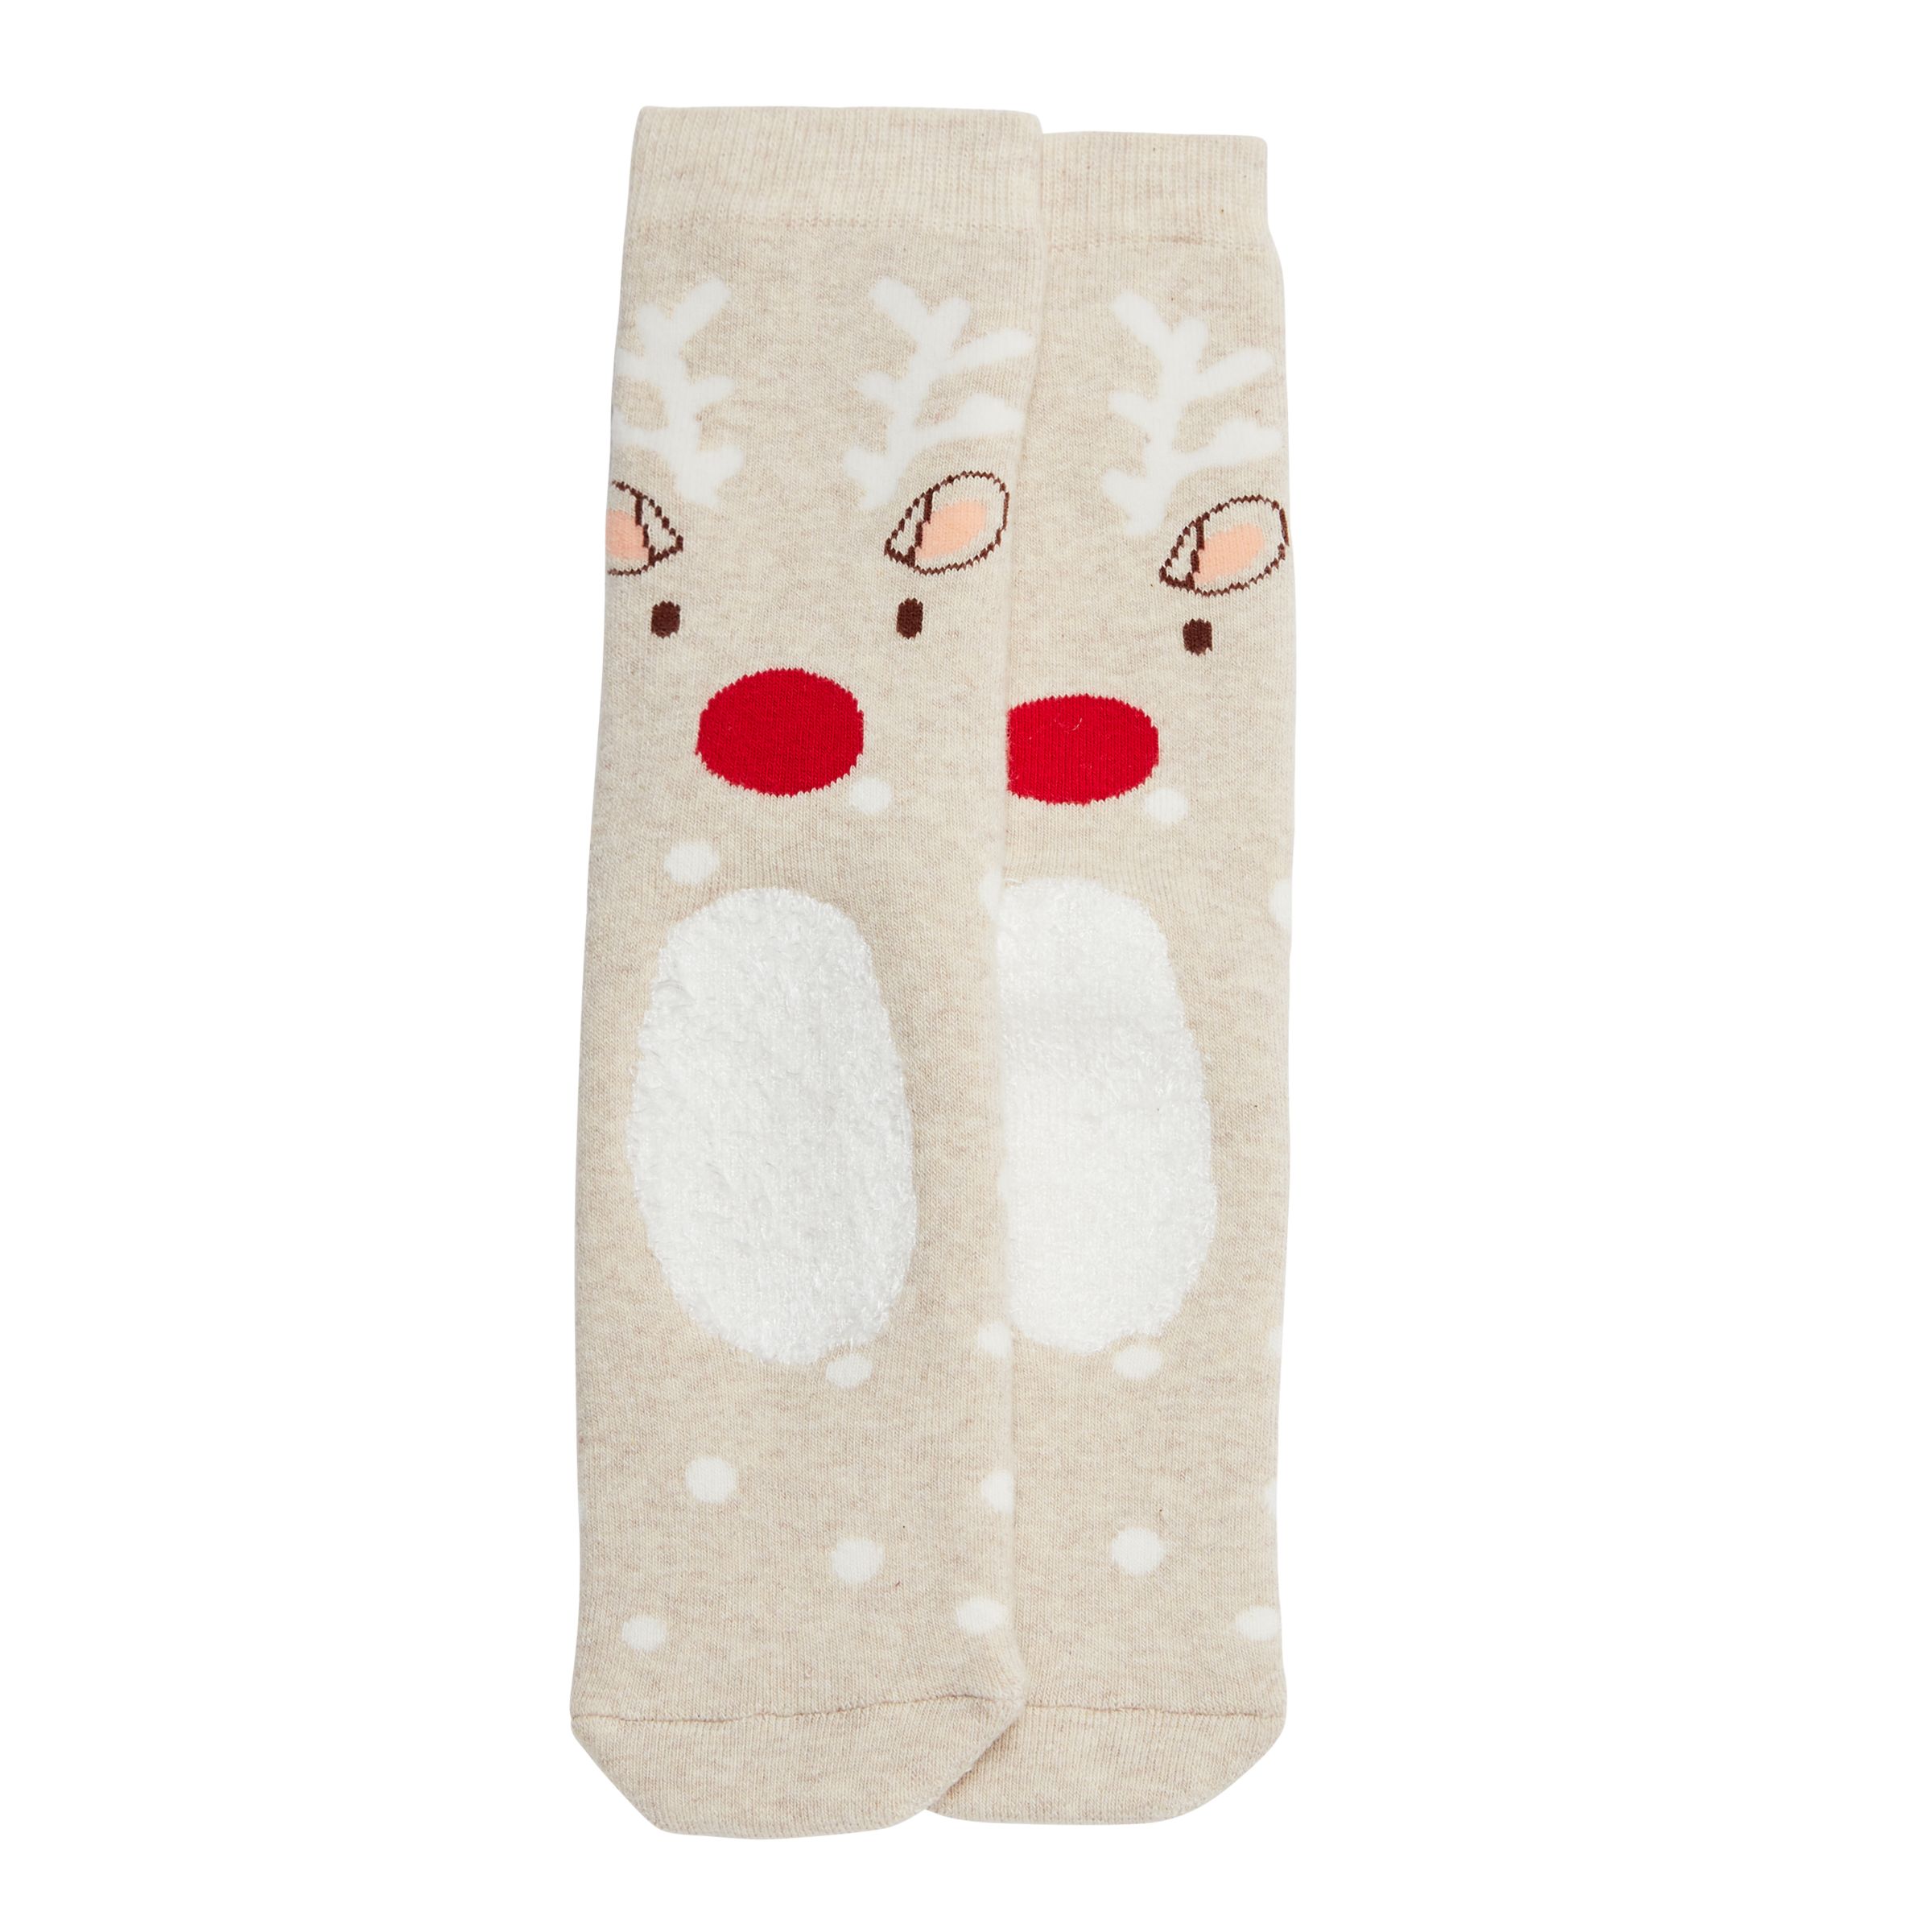 John Lewis & Partners Children's Reindeer Terry Slipper Socks, Cream